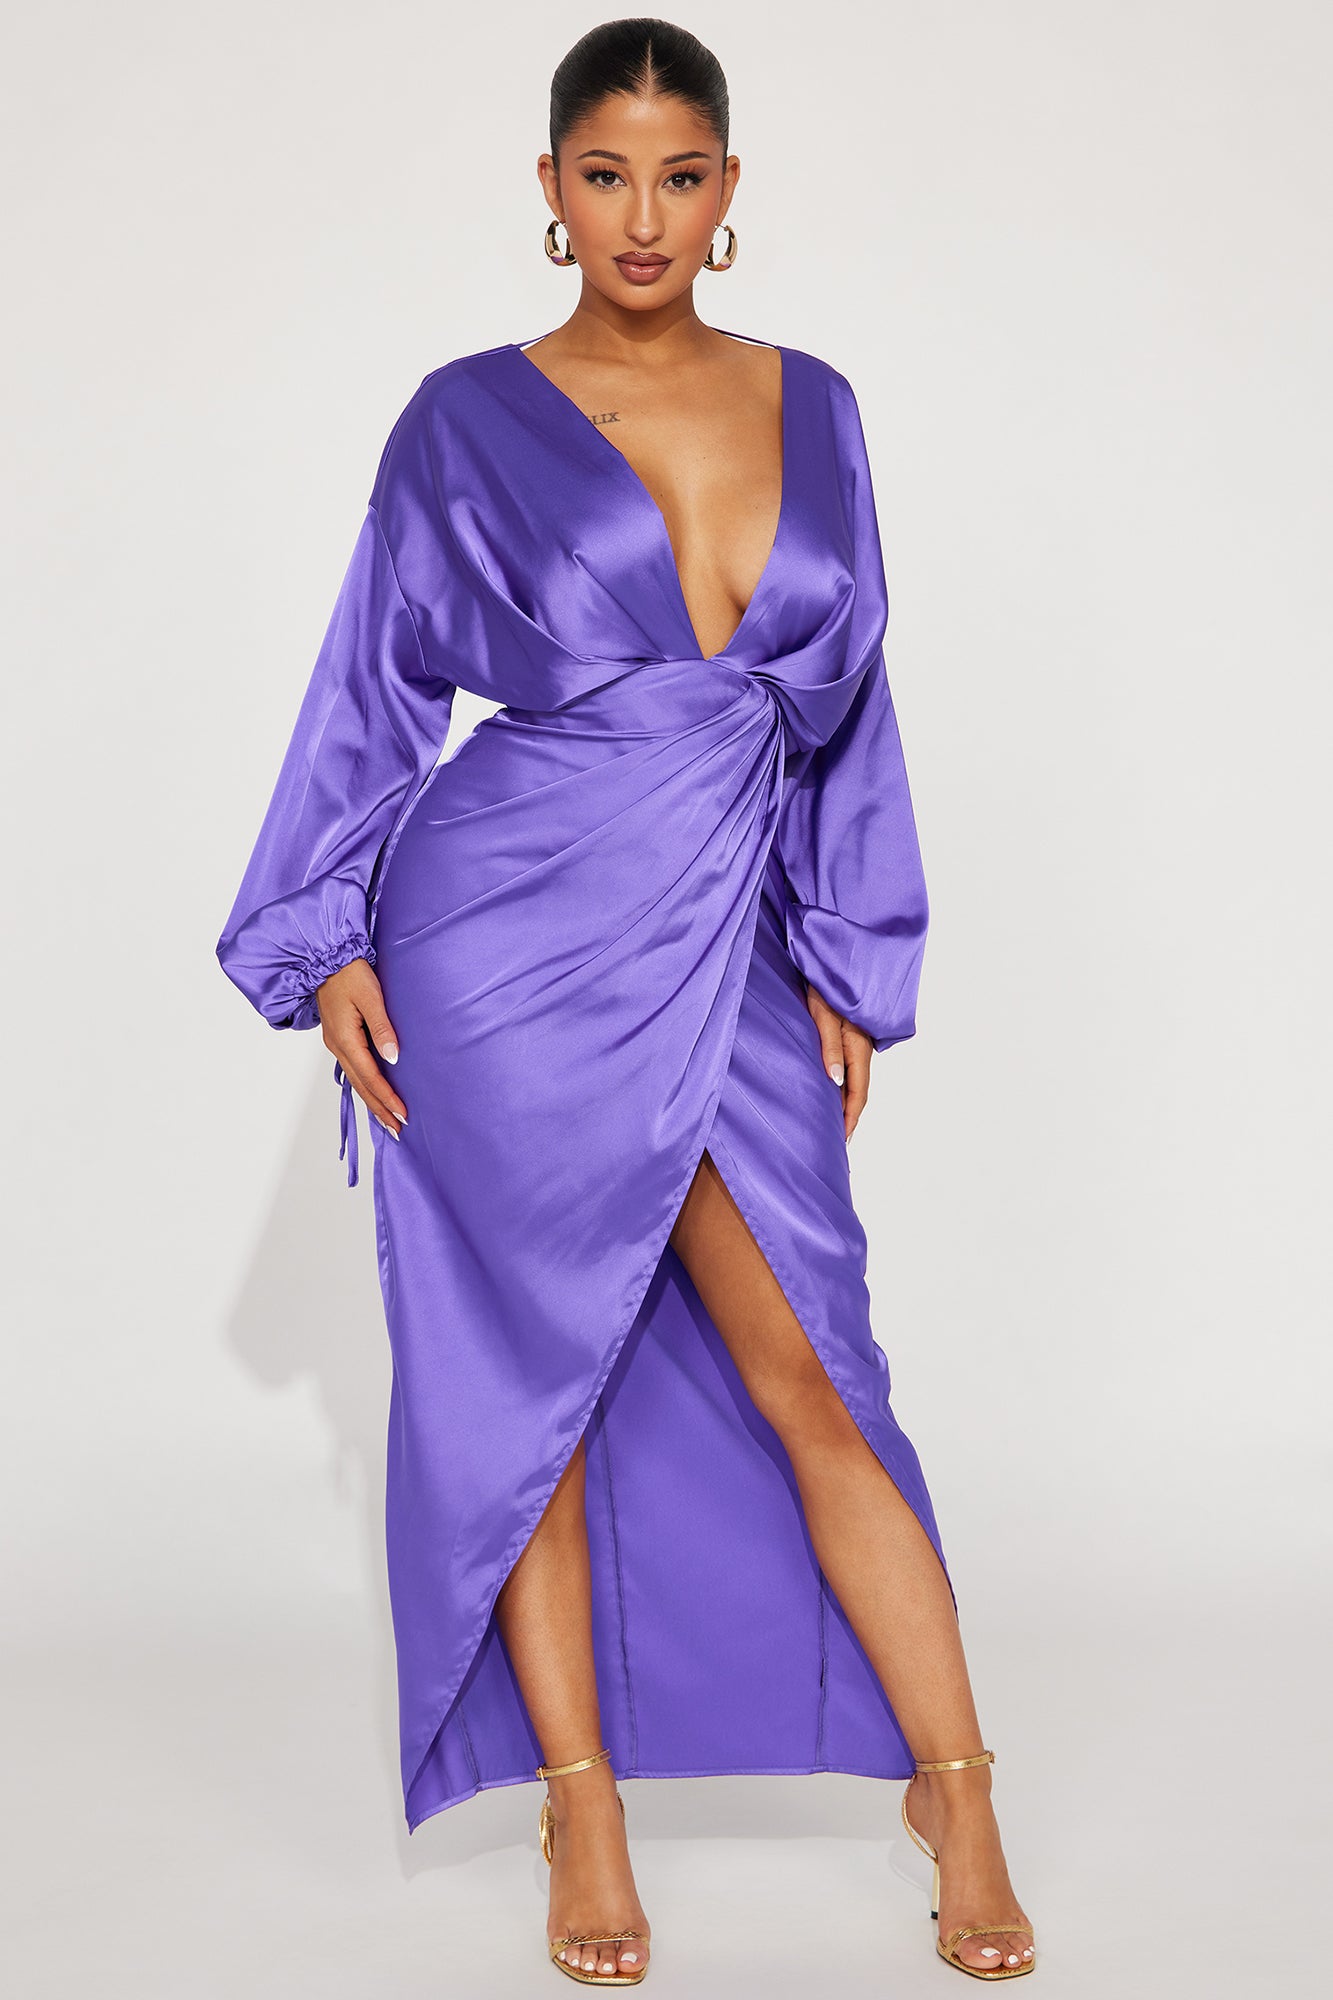 Be Your Girl Satin Maxi Dress - Lavender, Fashion Nova, Dresses